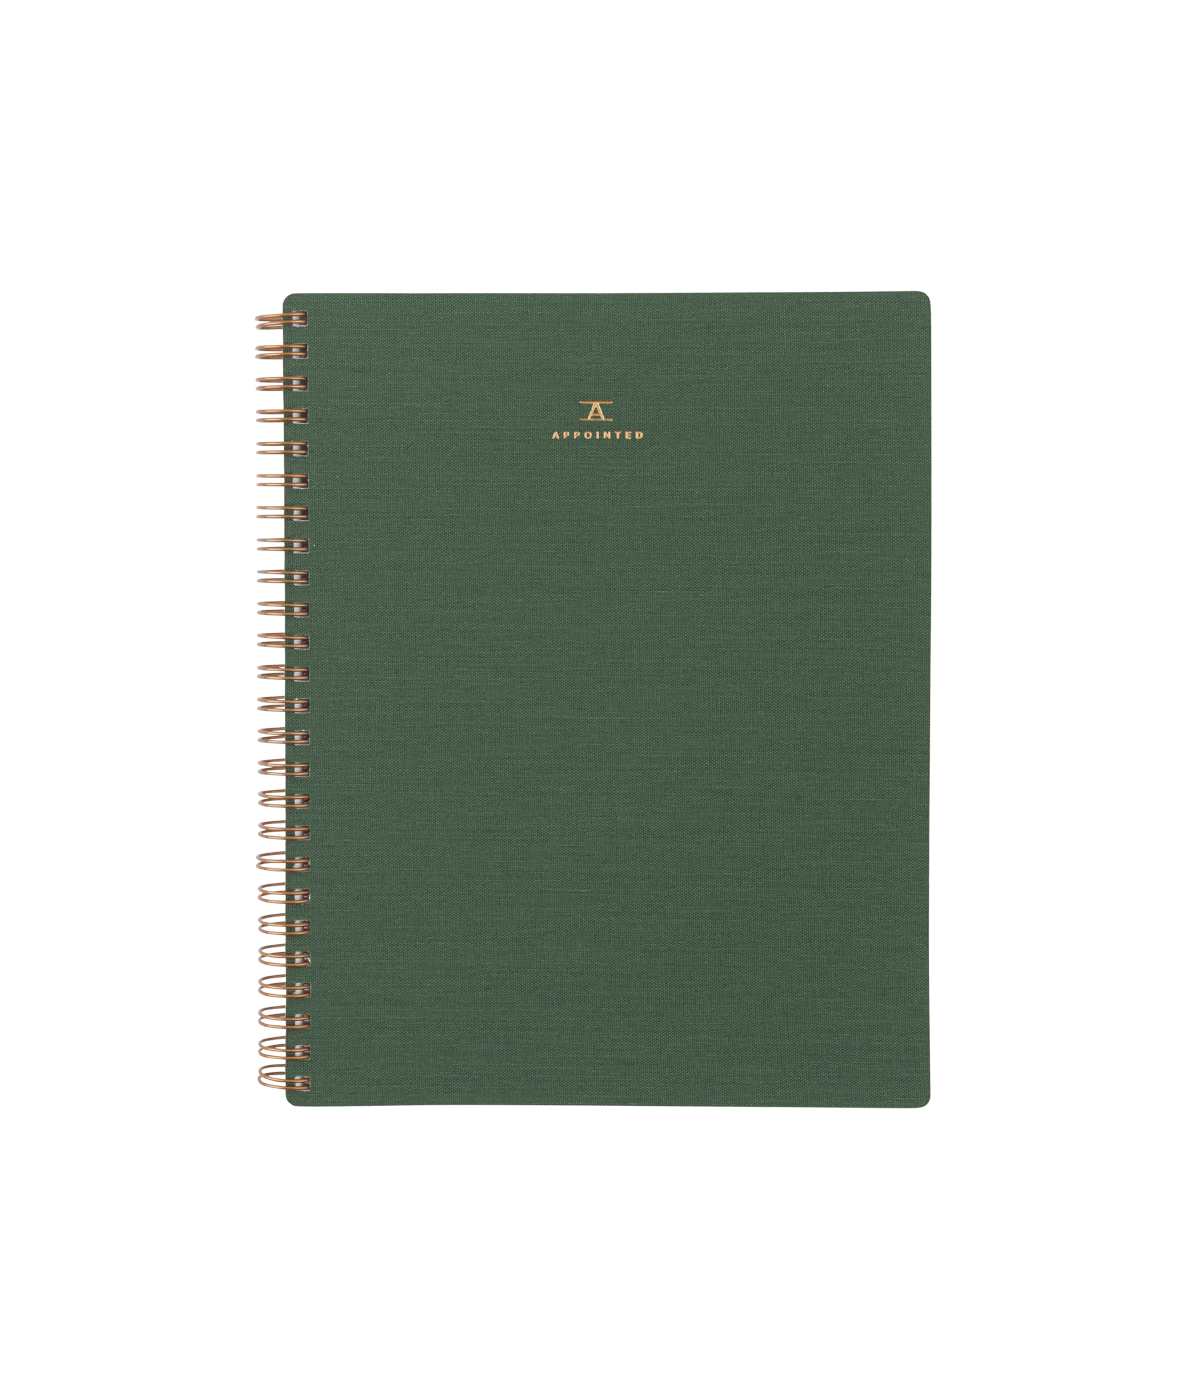 Dot Grid Workbook in Fern Green